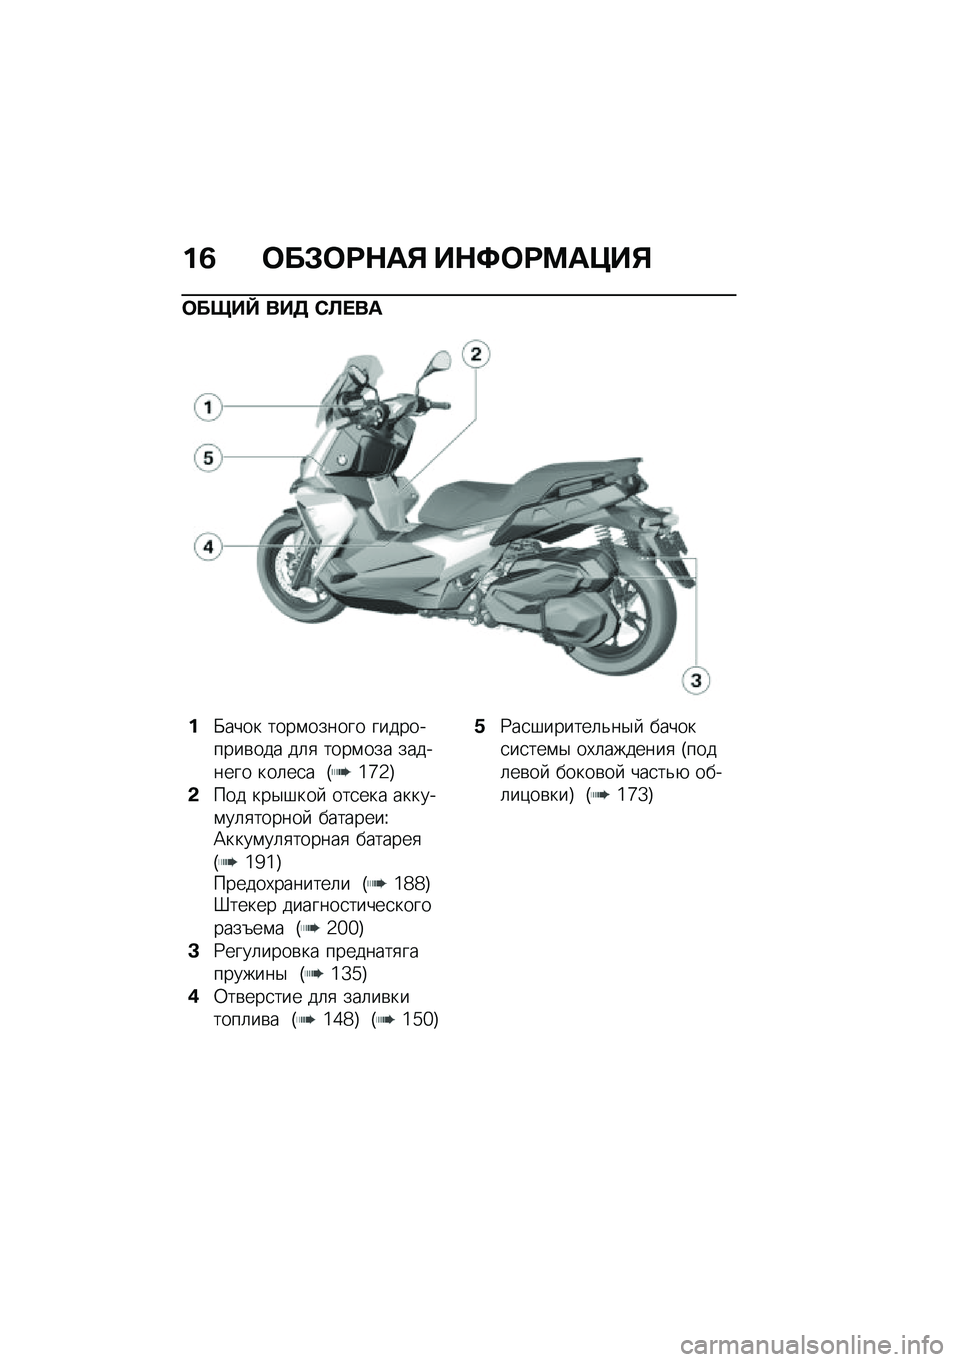 BMW MOTORRAD C 400 X 2020  Руководство по эксплуатации (in Russian) ��3 �	��#�	�;�$��% ��$�<�	�;�=��>��%
�	����^ ���5 �*�S� ��
��X���� ����\f������ ����������\b��� ��	�
 ����\f��� �������� ���	��
� �T�6�c�5�U
�